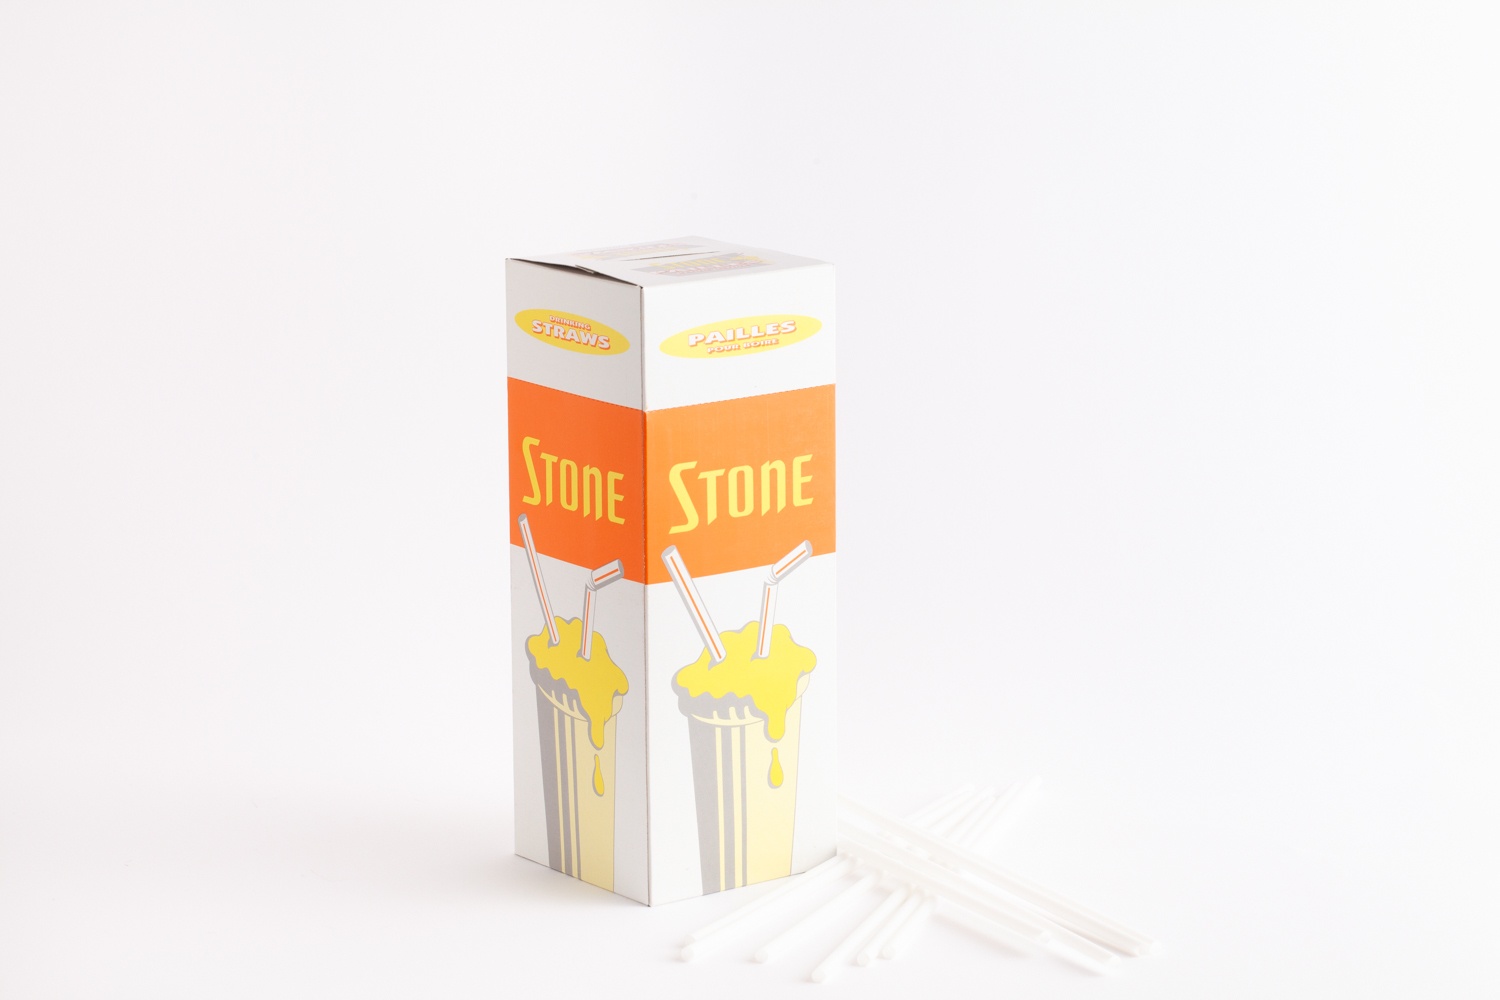 isolated product shot - stone straws box orange